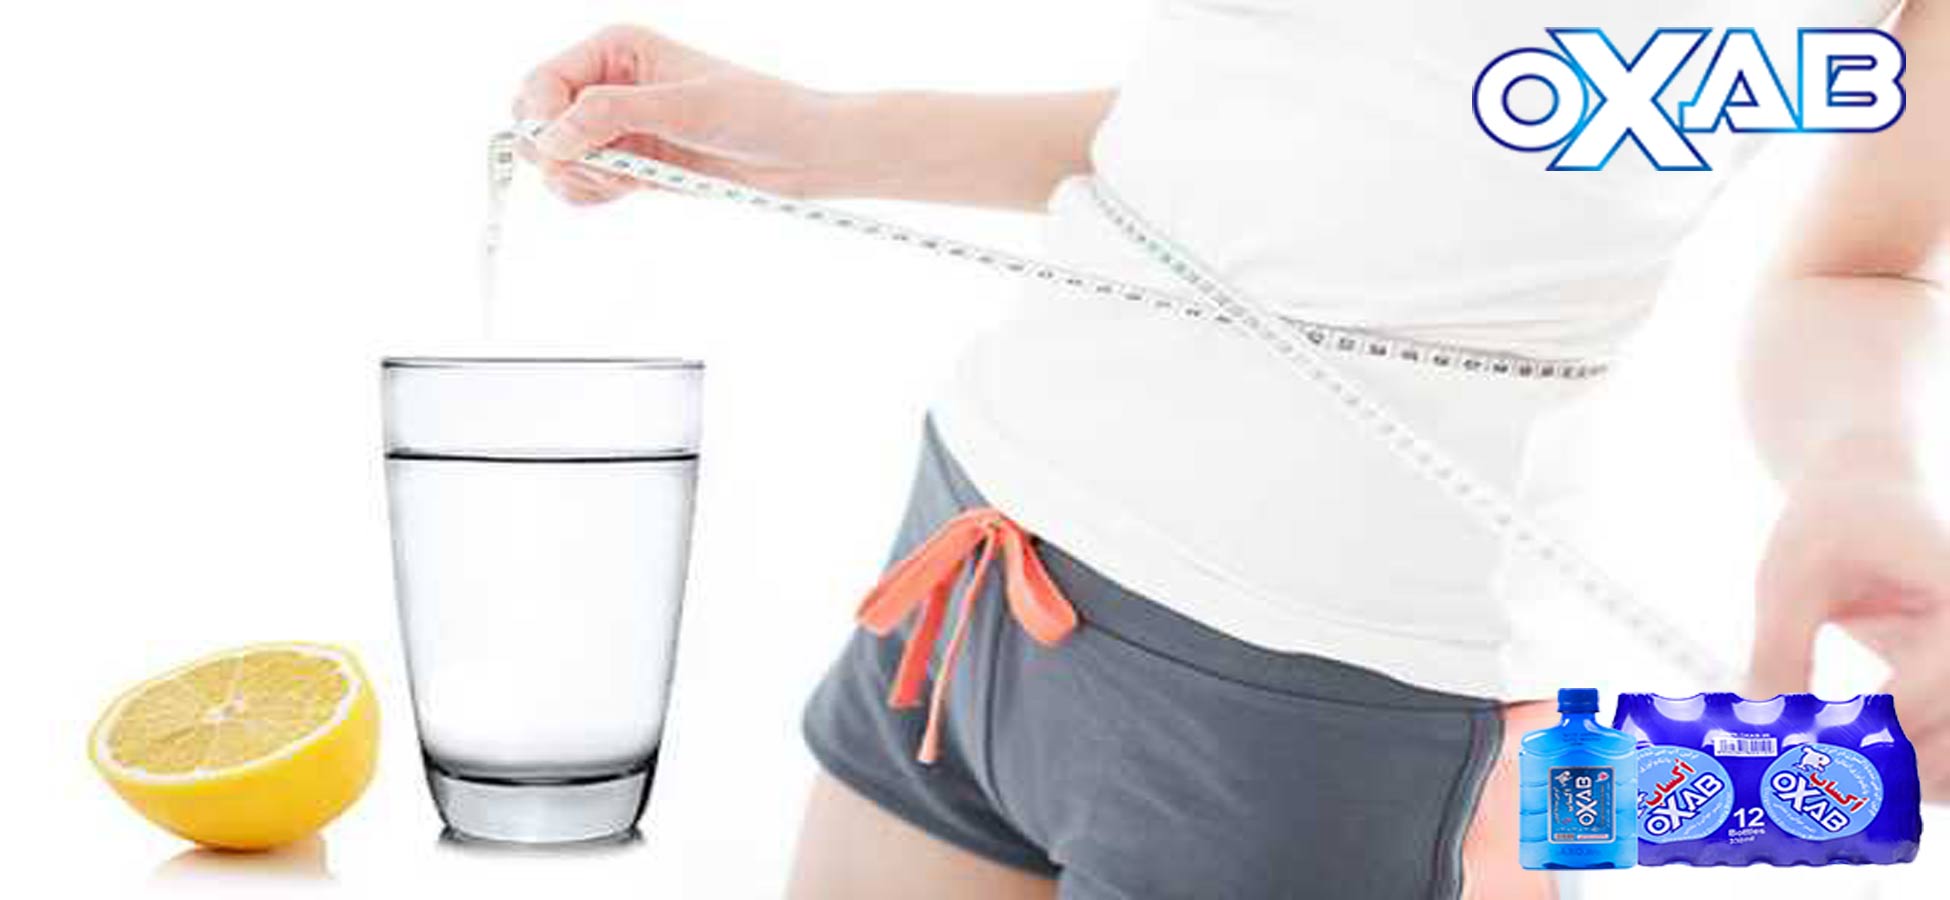 روش های کاهش وزن با آب